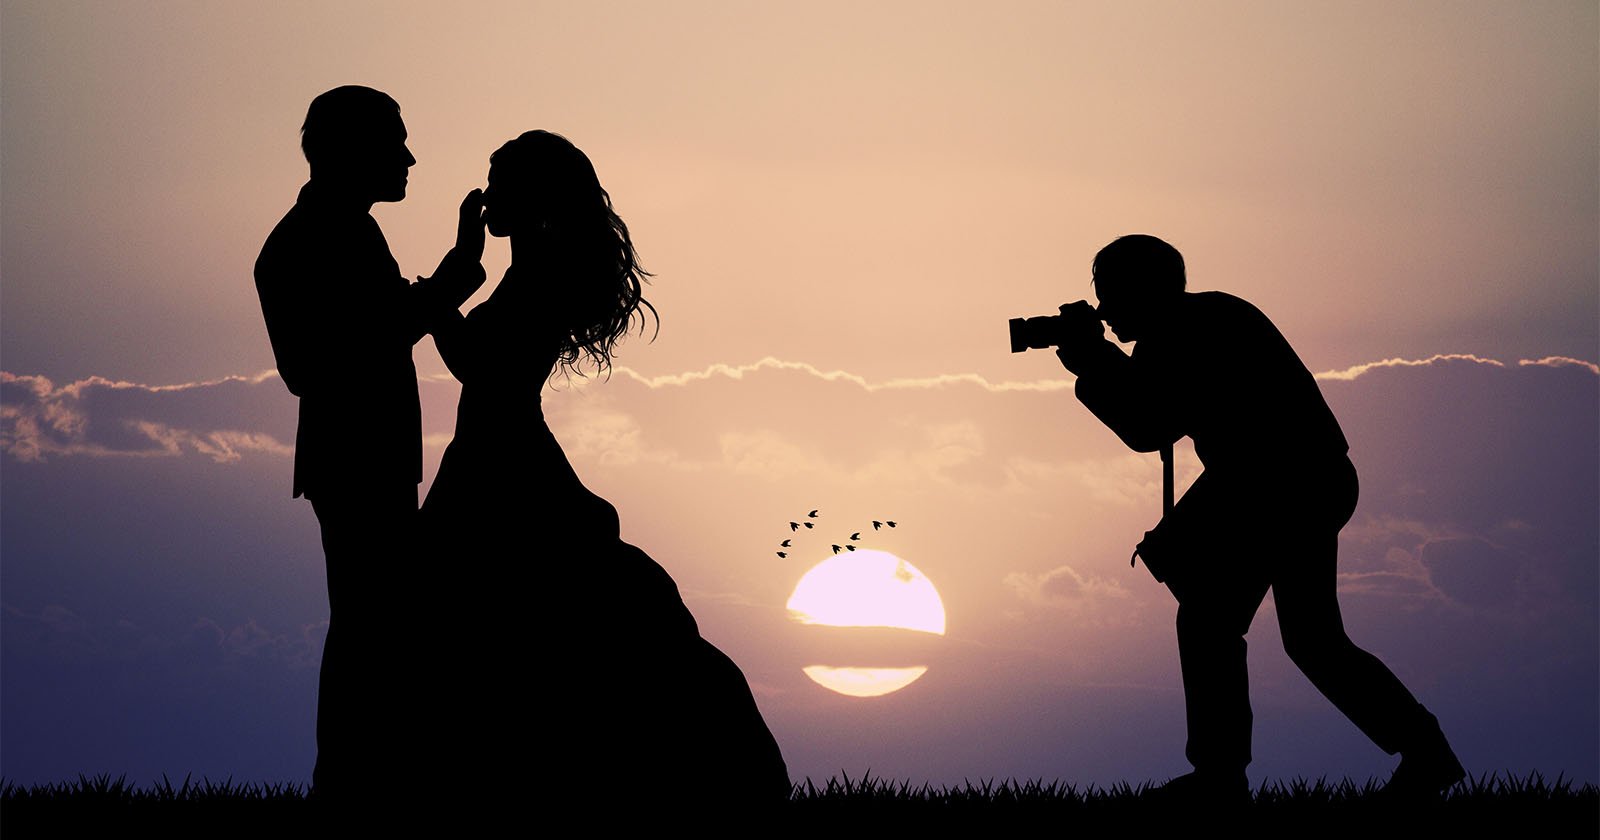  100 wedding photographers according yelp 